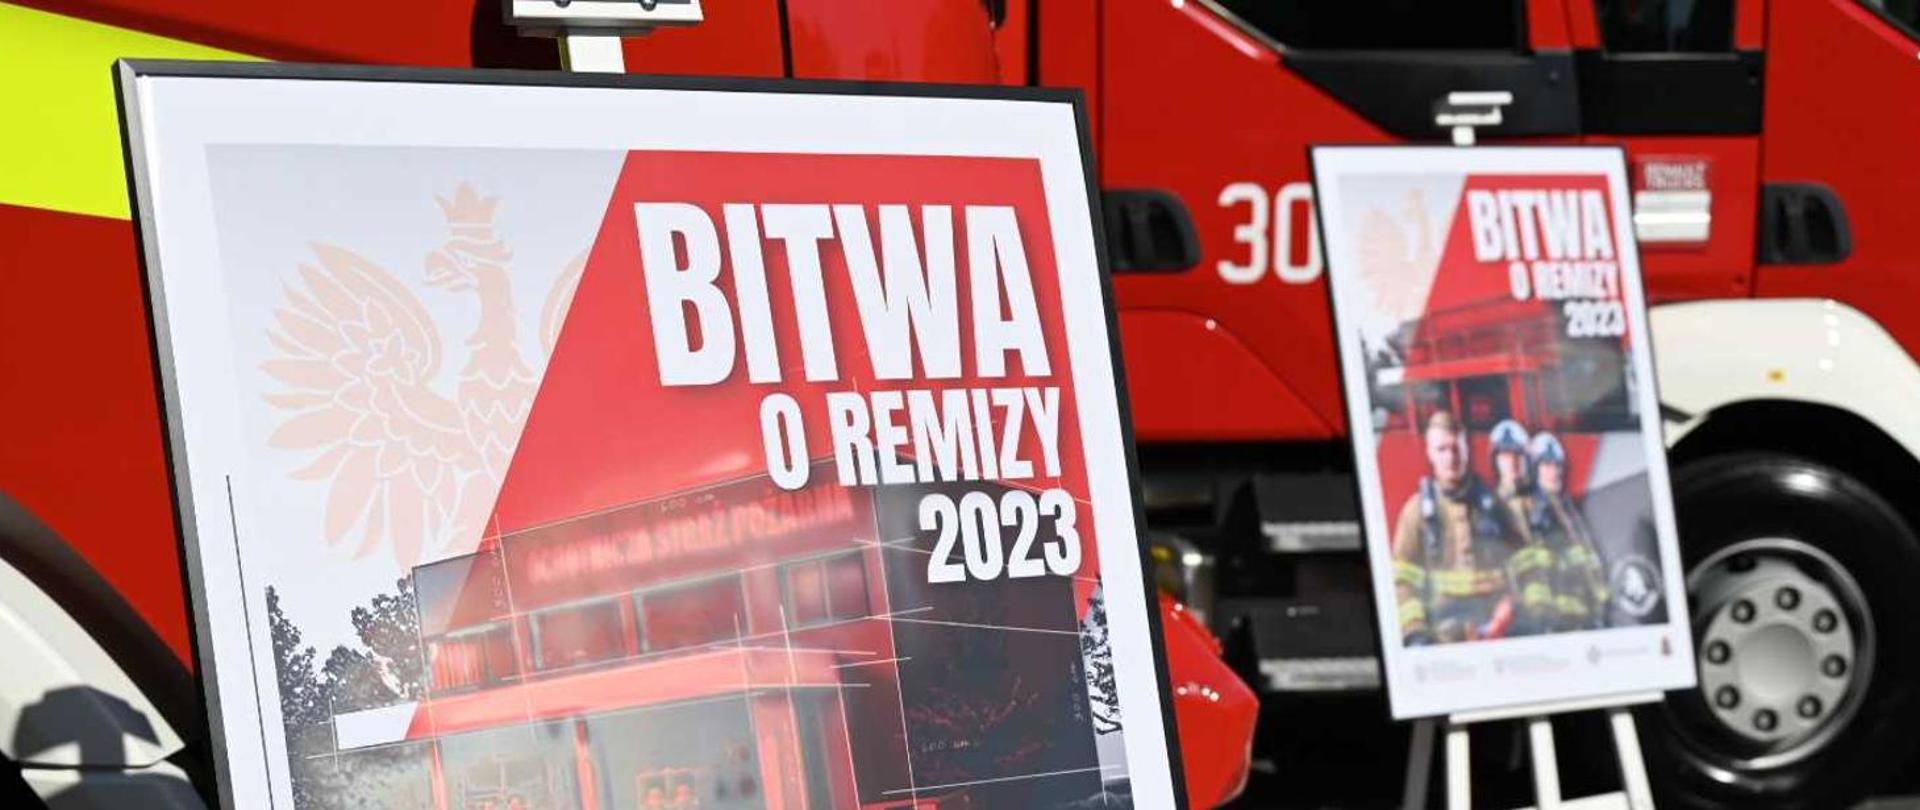 Fotografia przedstawia dwa plakaty promujące akcję "Bitwa o remizy 2023" na tle samochodu strażackiego